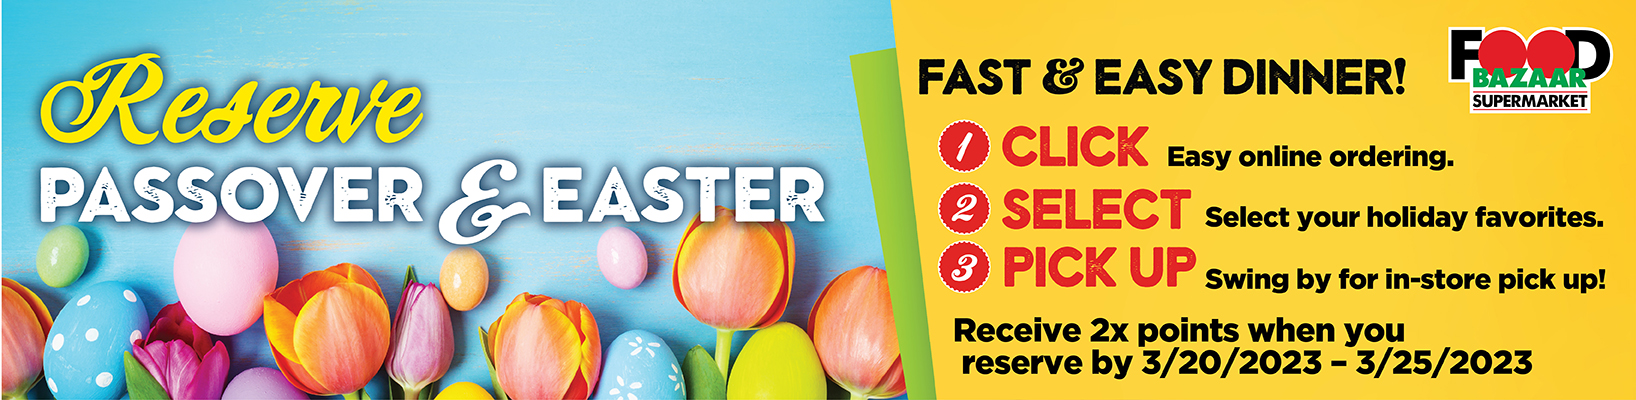 Reserve Passover & Easter Dinner!